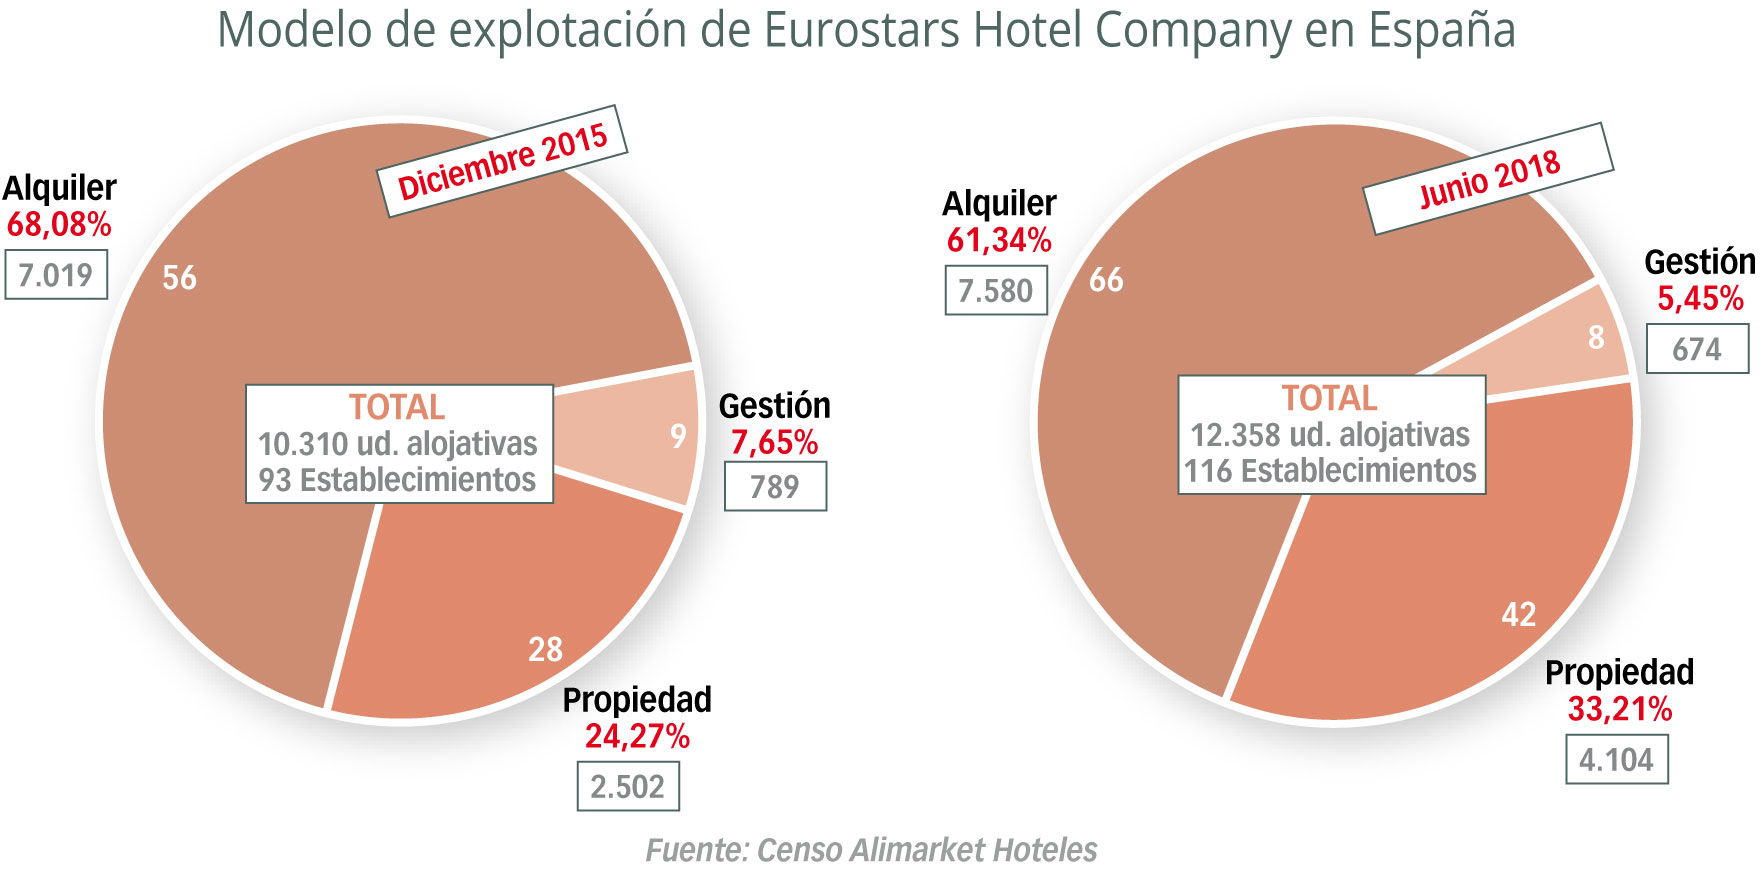 Eurostars confía su expansión a la “propiedad”